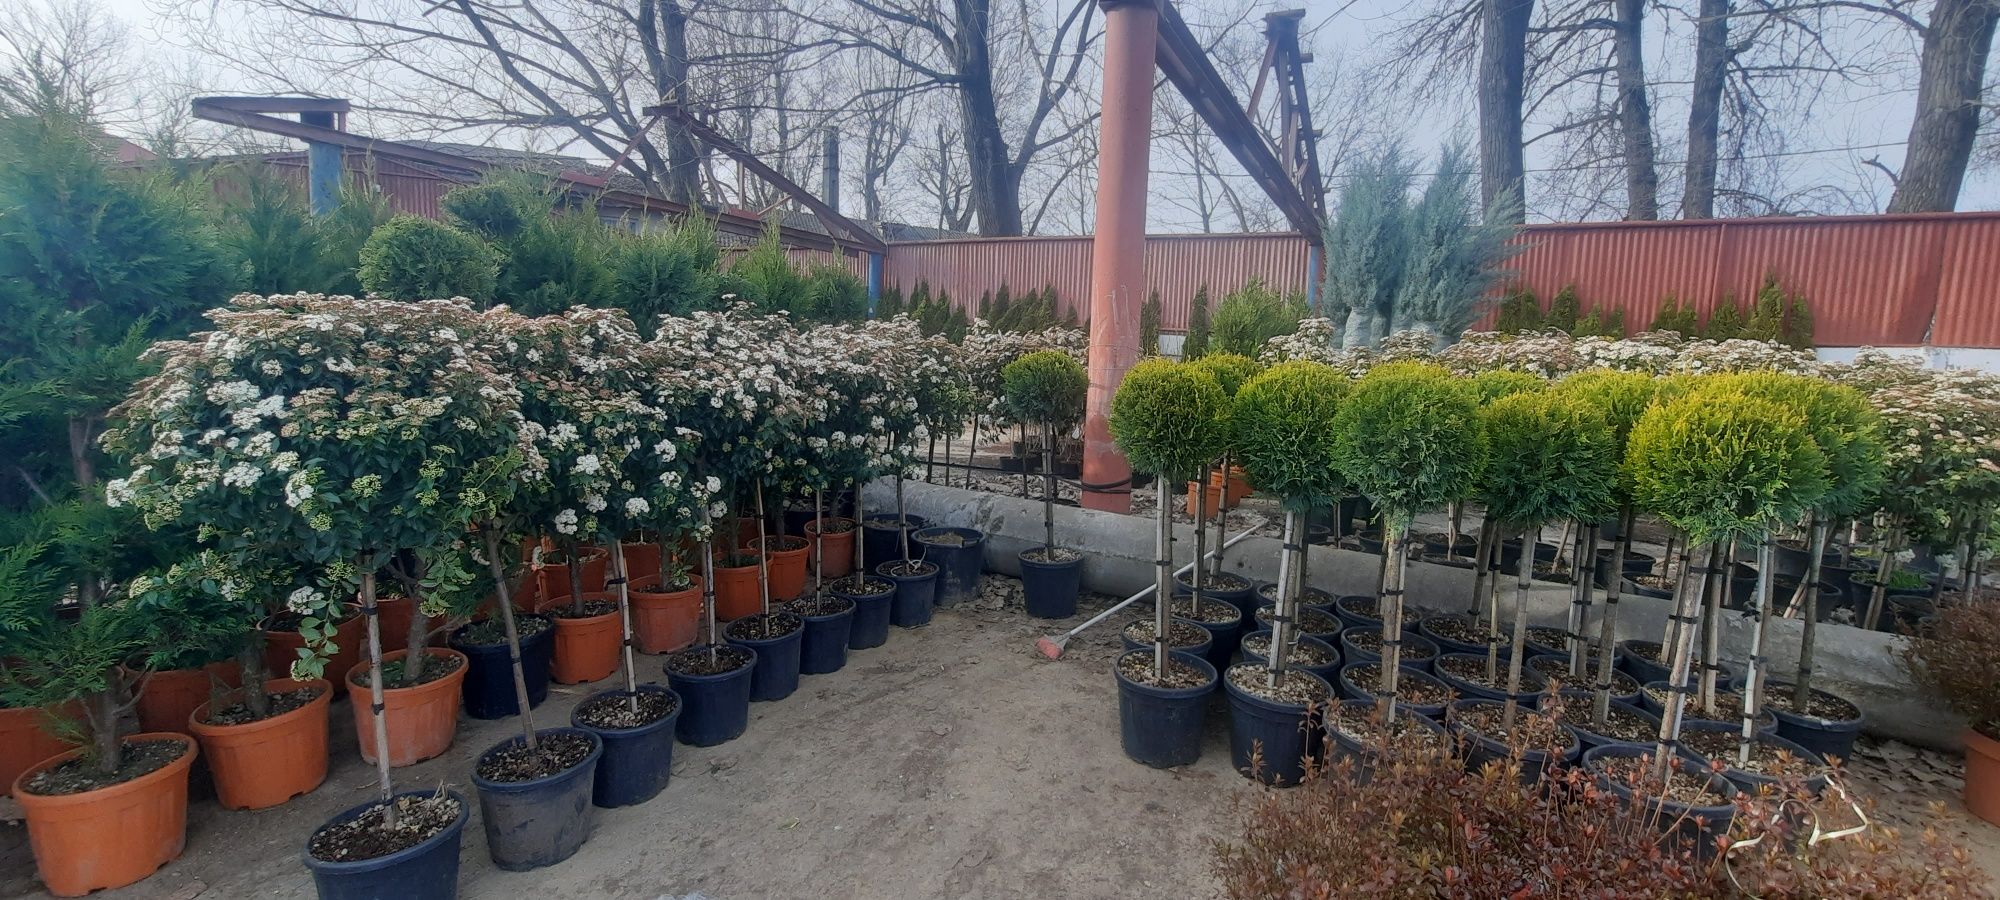 Vând plante ornamentale diferite plante